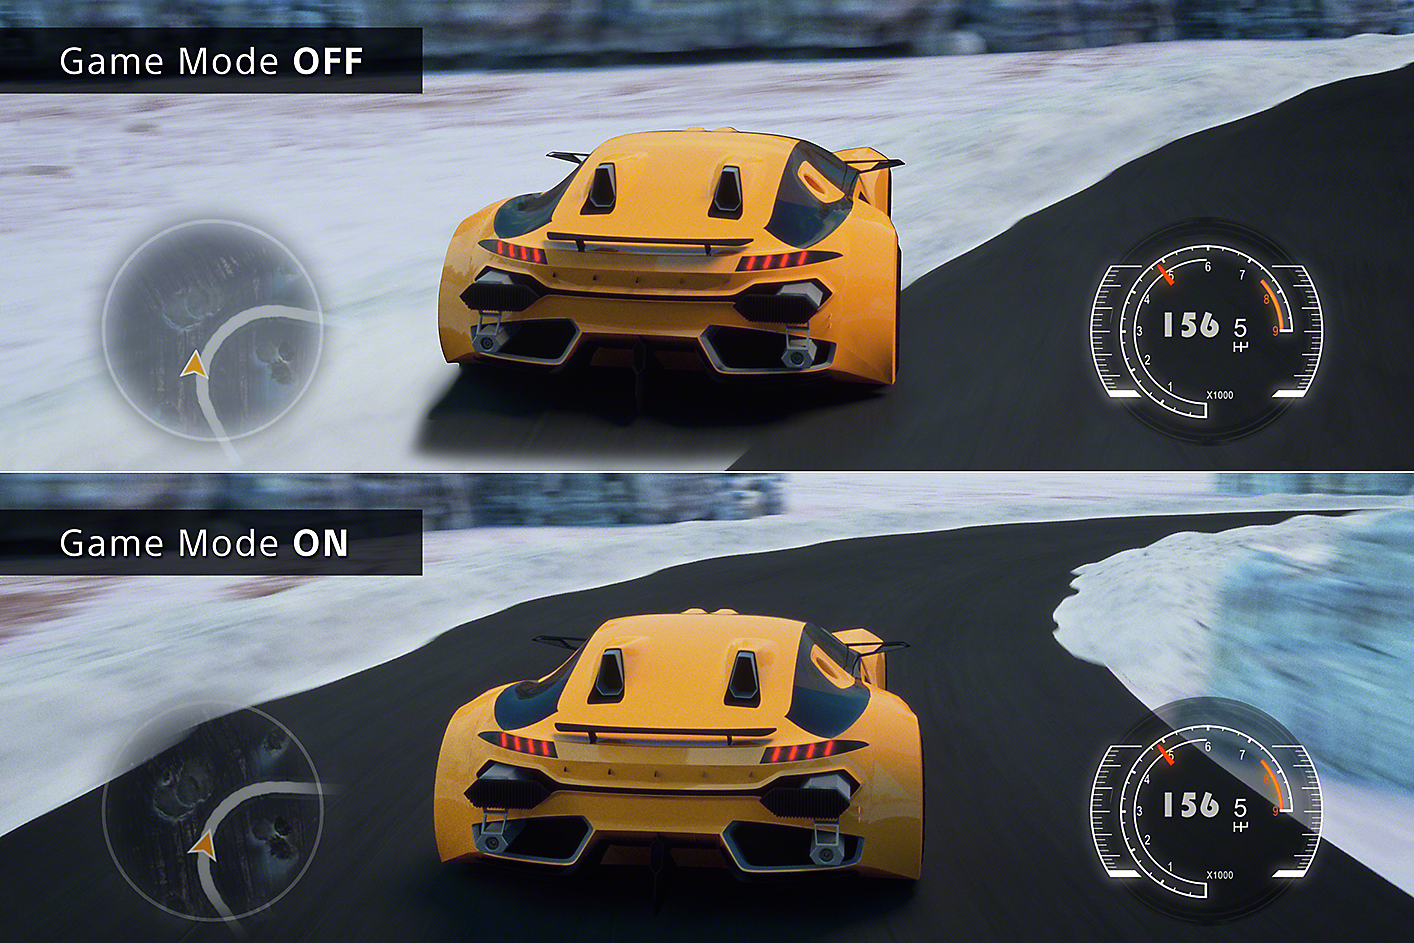 Imagem dividida mostra 2 cenas de jogo de carros, uma com carro a sair da pista com Modo de Jogo desligado e outra com carro na pista com Modo de Jogo ligado